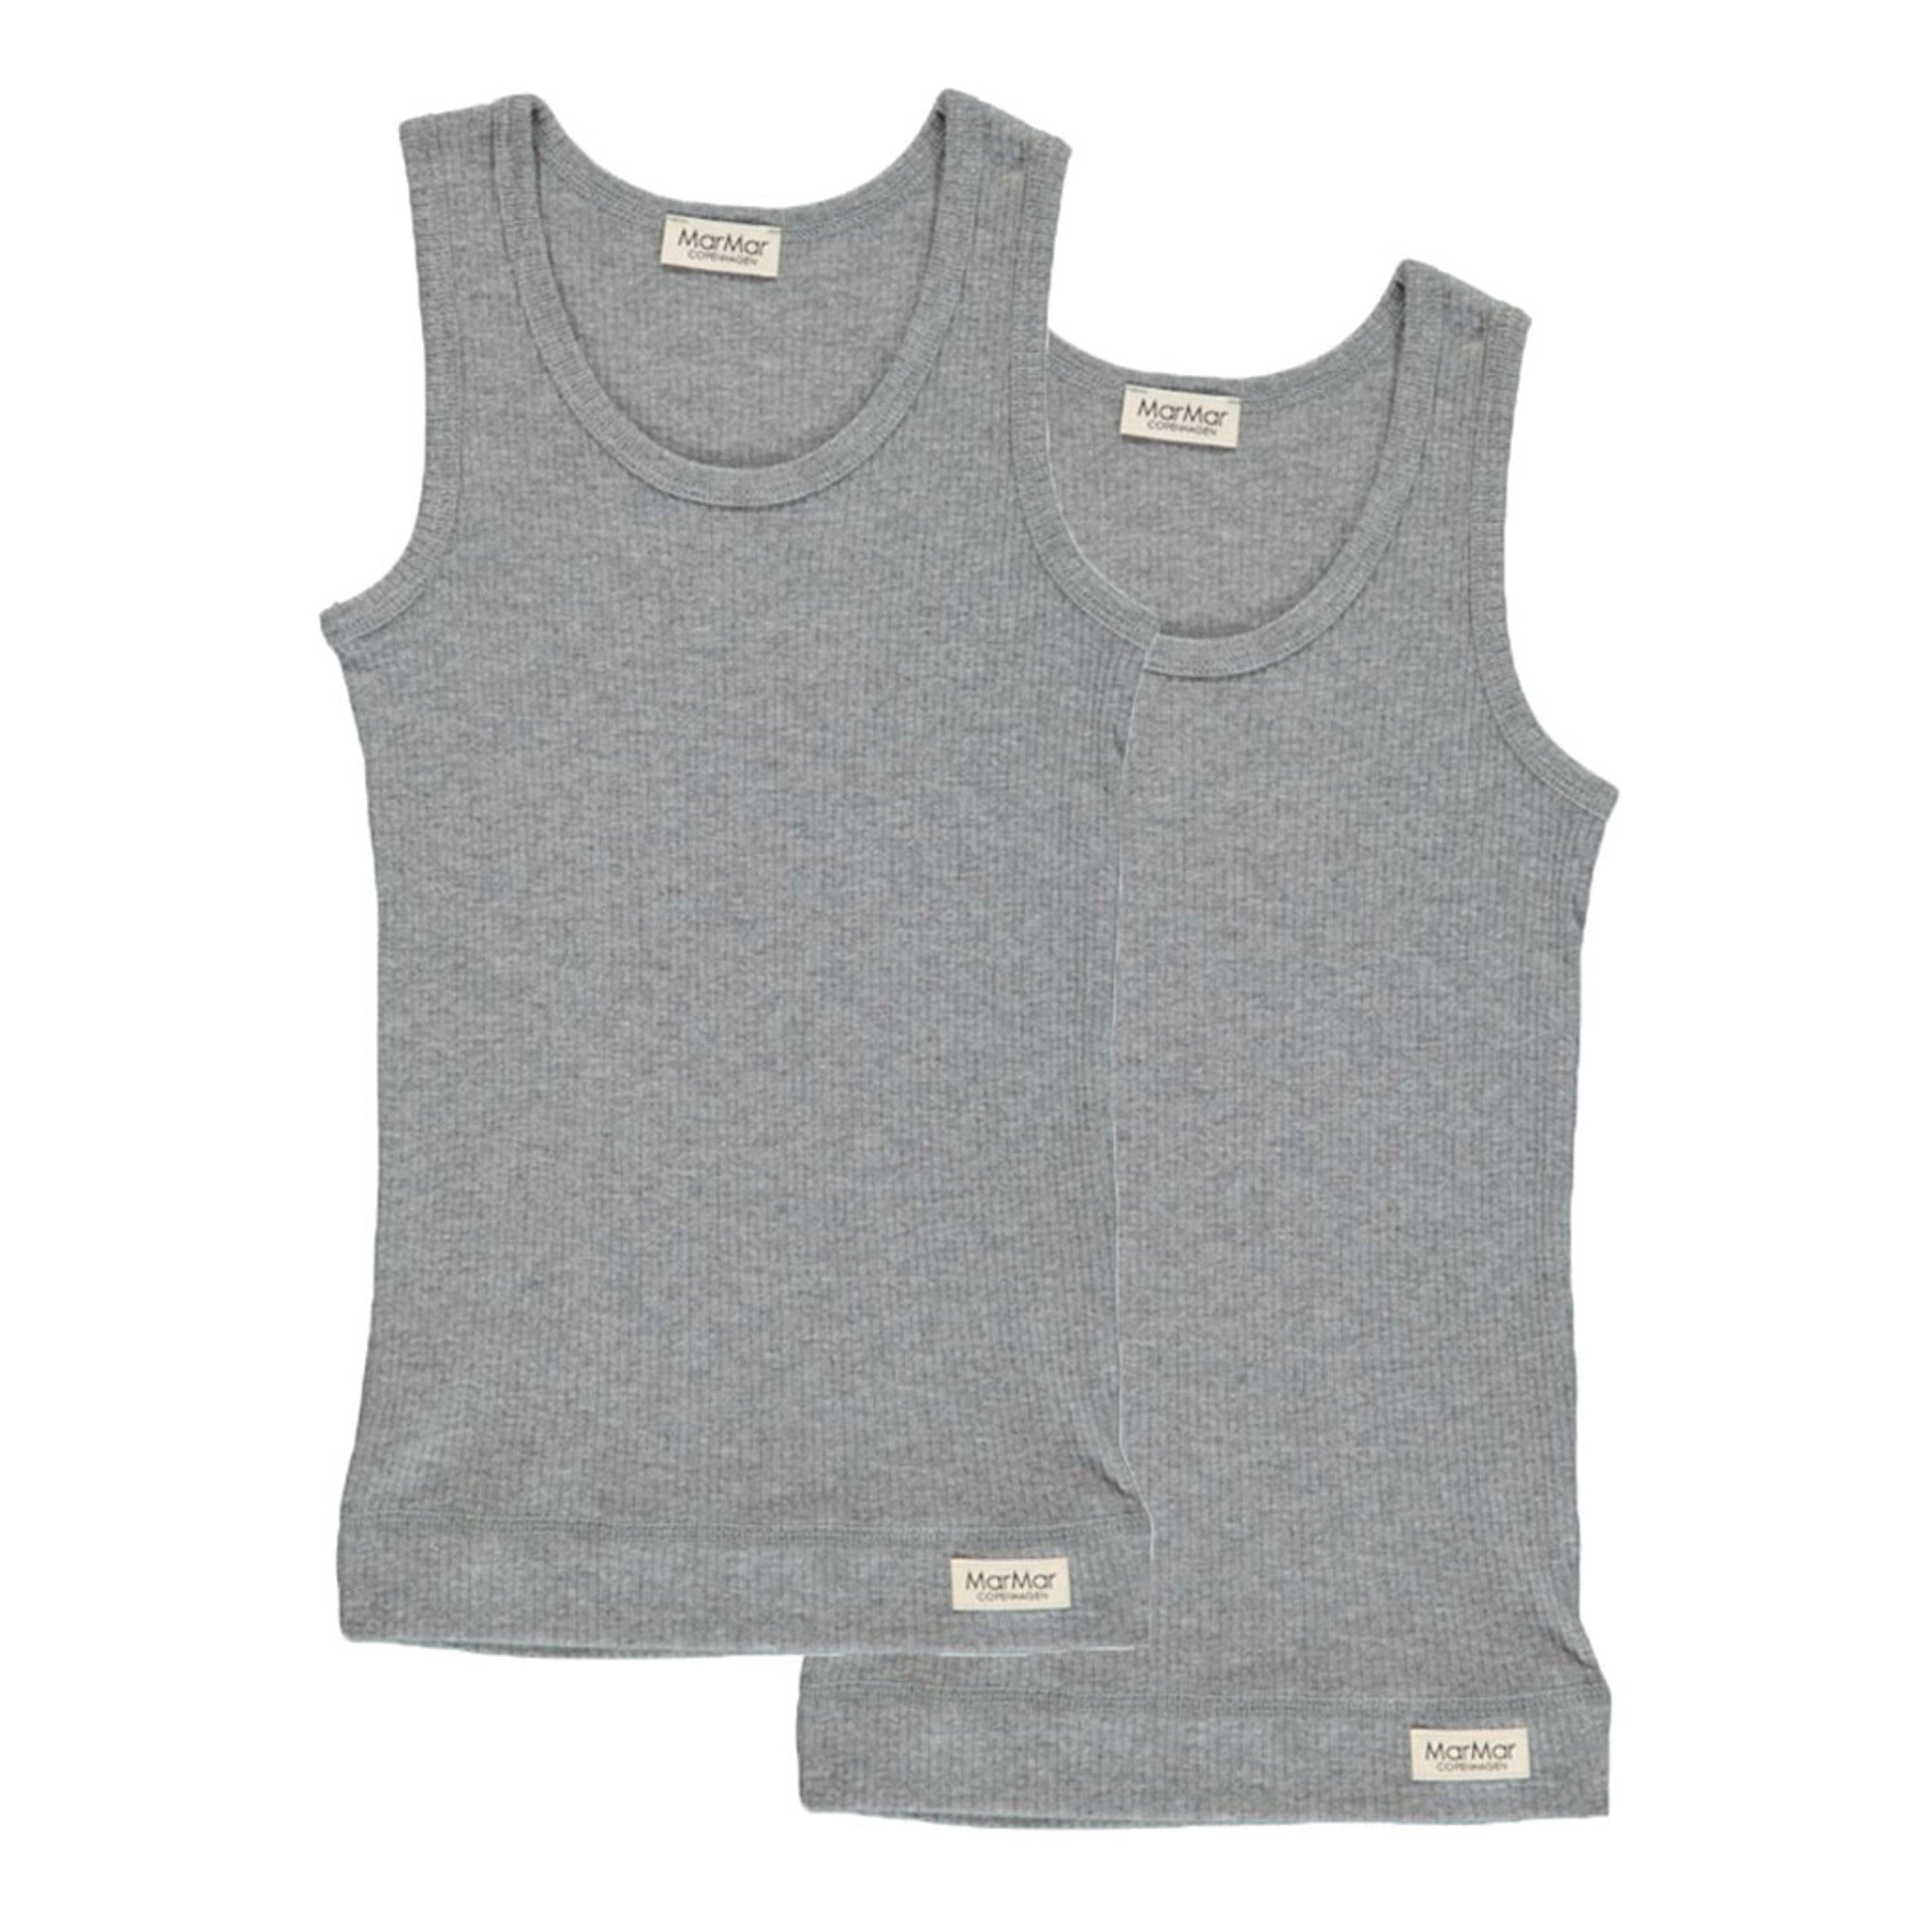 Boys & Girls Grey Vest Set(2 Pack)